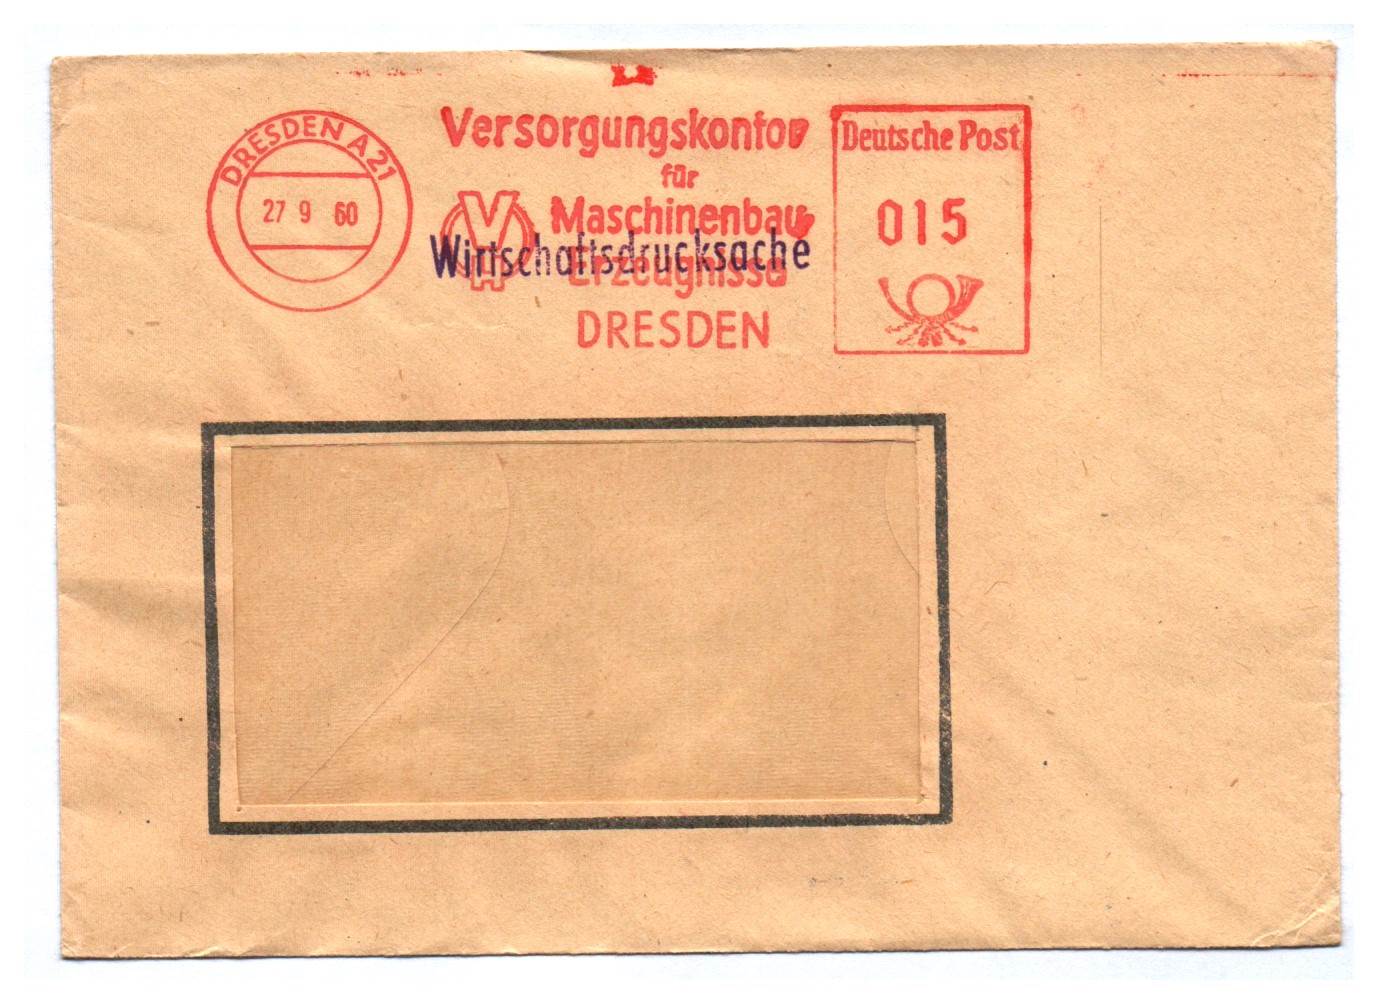 Wirtschaftsdrucksache 1960 Versorgungskontor Maschinenbau Dresden DDR